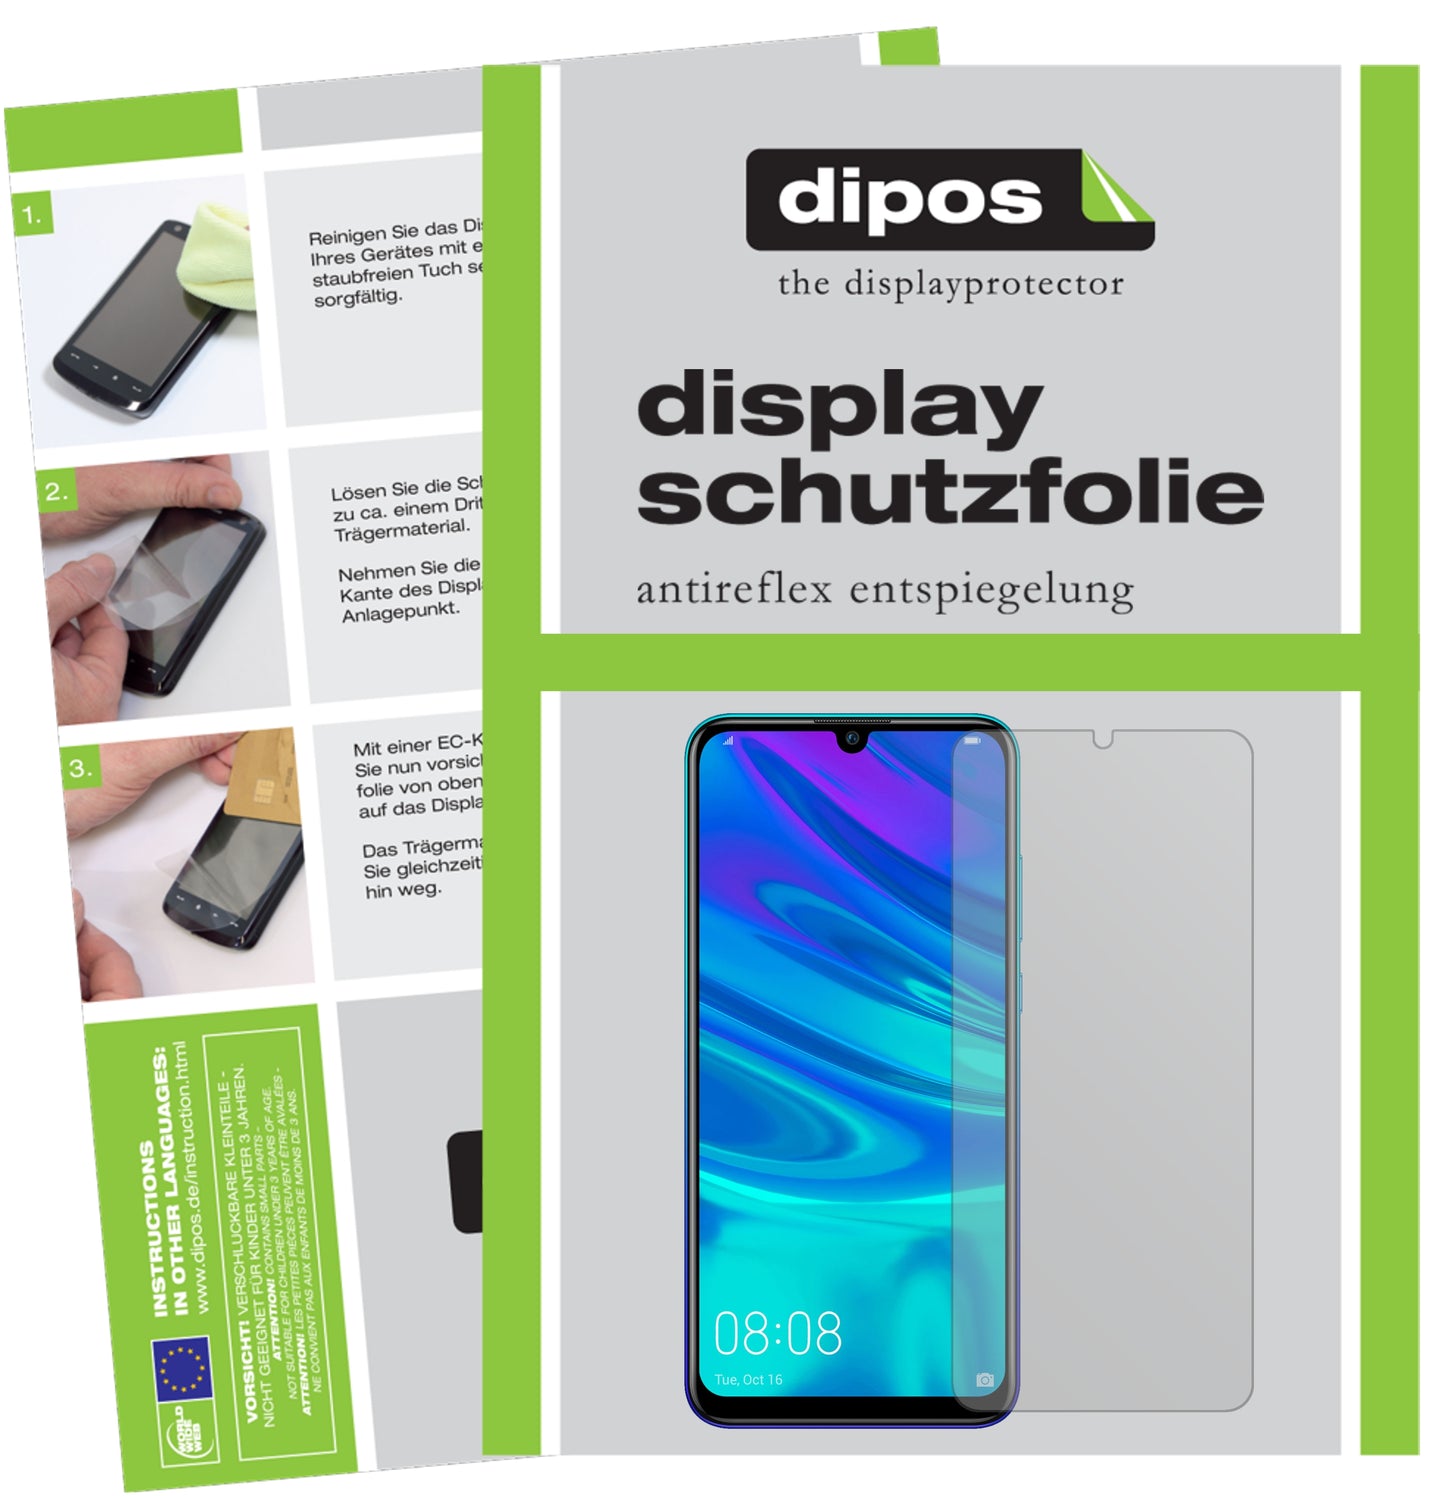 Mattes Panzerglas: Entspiegelte, dünne Folie, Fingerabdruckresistenz und Bildschirmschutz für Huawei-P Smart (2019)